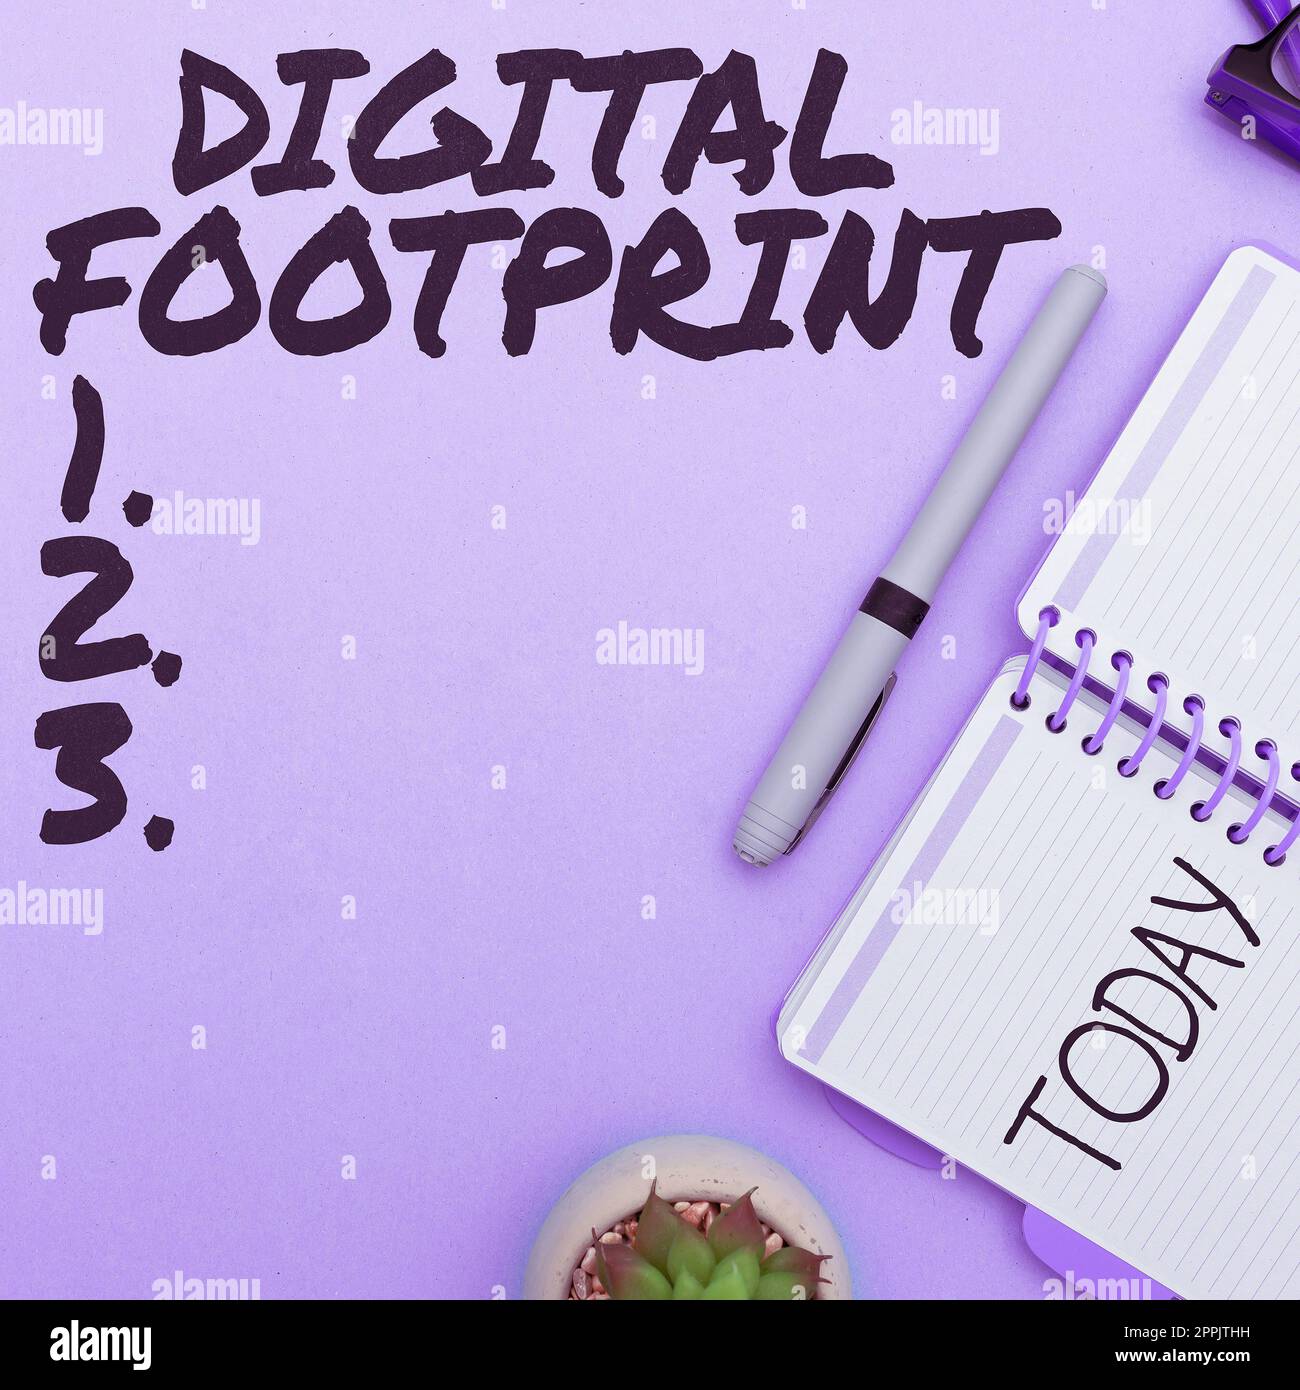 Testo che mostra il footprint digitale di Inspiration. Business Concept utilizza la tecnologia digitale per gestire il processo di produzione Foto Stock